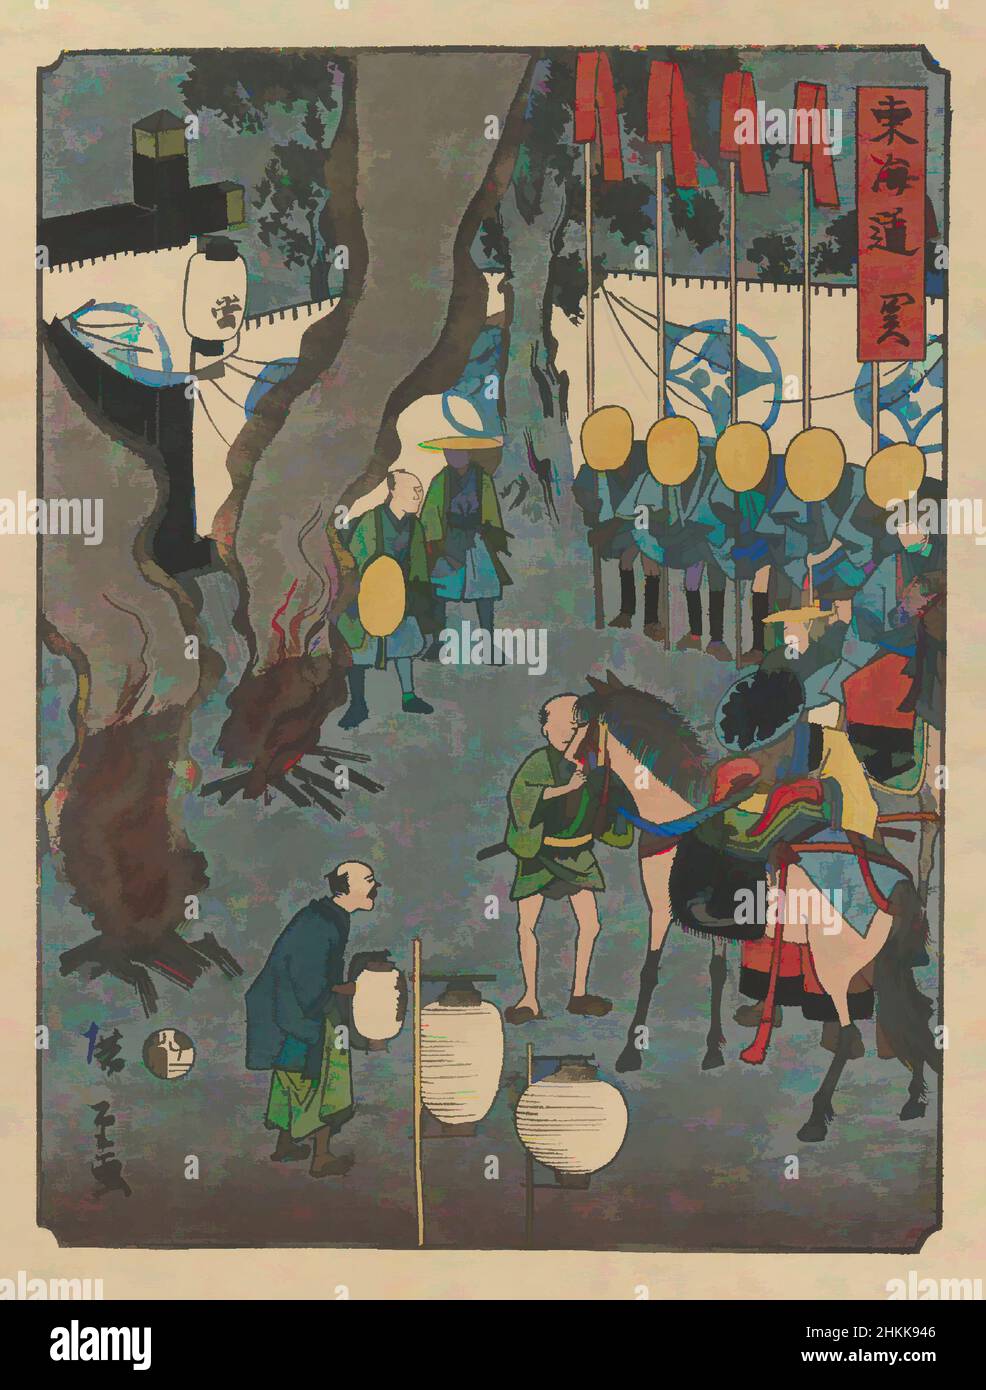 Kunst inspiriert von Seki, aus der Serie The Tōkaidō Road, Utagawa Hiroshige II, japanisch, 1826-1869, Farbholzschnitt auf Papier, Japan, 1864, Edo-Periode, 10 x 7 3/8 Zoll, 25,4 x 18,7 cm, Edo-Periode, Sammlung, Japan, japanisch, Meisho-e, Nishiki-e, Parade, Prozession, Ritual, Ukiyo-e, Classic Works modernisiert von Artotop mit einem Schuss Moderne. Formen, Farbe und Wert, auffällige visuelle Wirkung auf Kunst. Emotionen durch Freiheit von Kunstwerken auf zeitgemäße Weise. Eine zeitlose Botschaft, die eine wild kreative neue Richtung verfolgt. Künstler, die sich dem digitalen Medium zuwenden und die Artotop NFT erschaffen Stockfoto